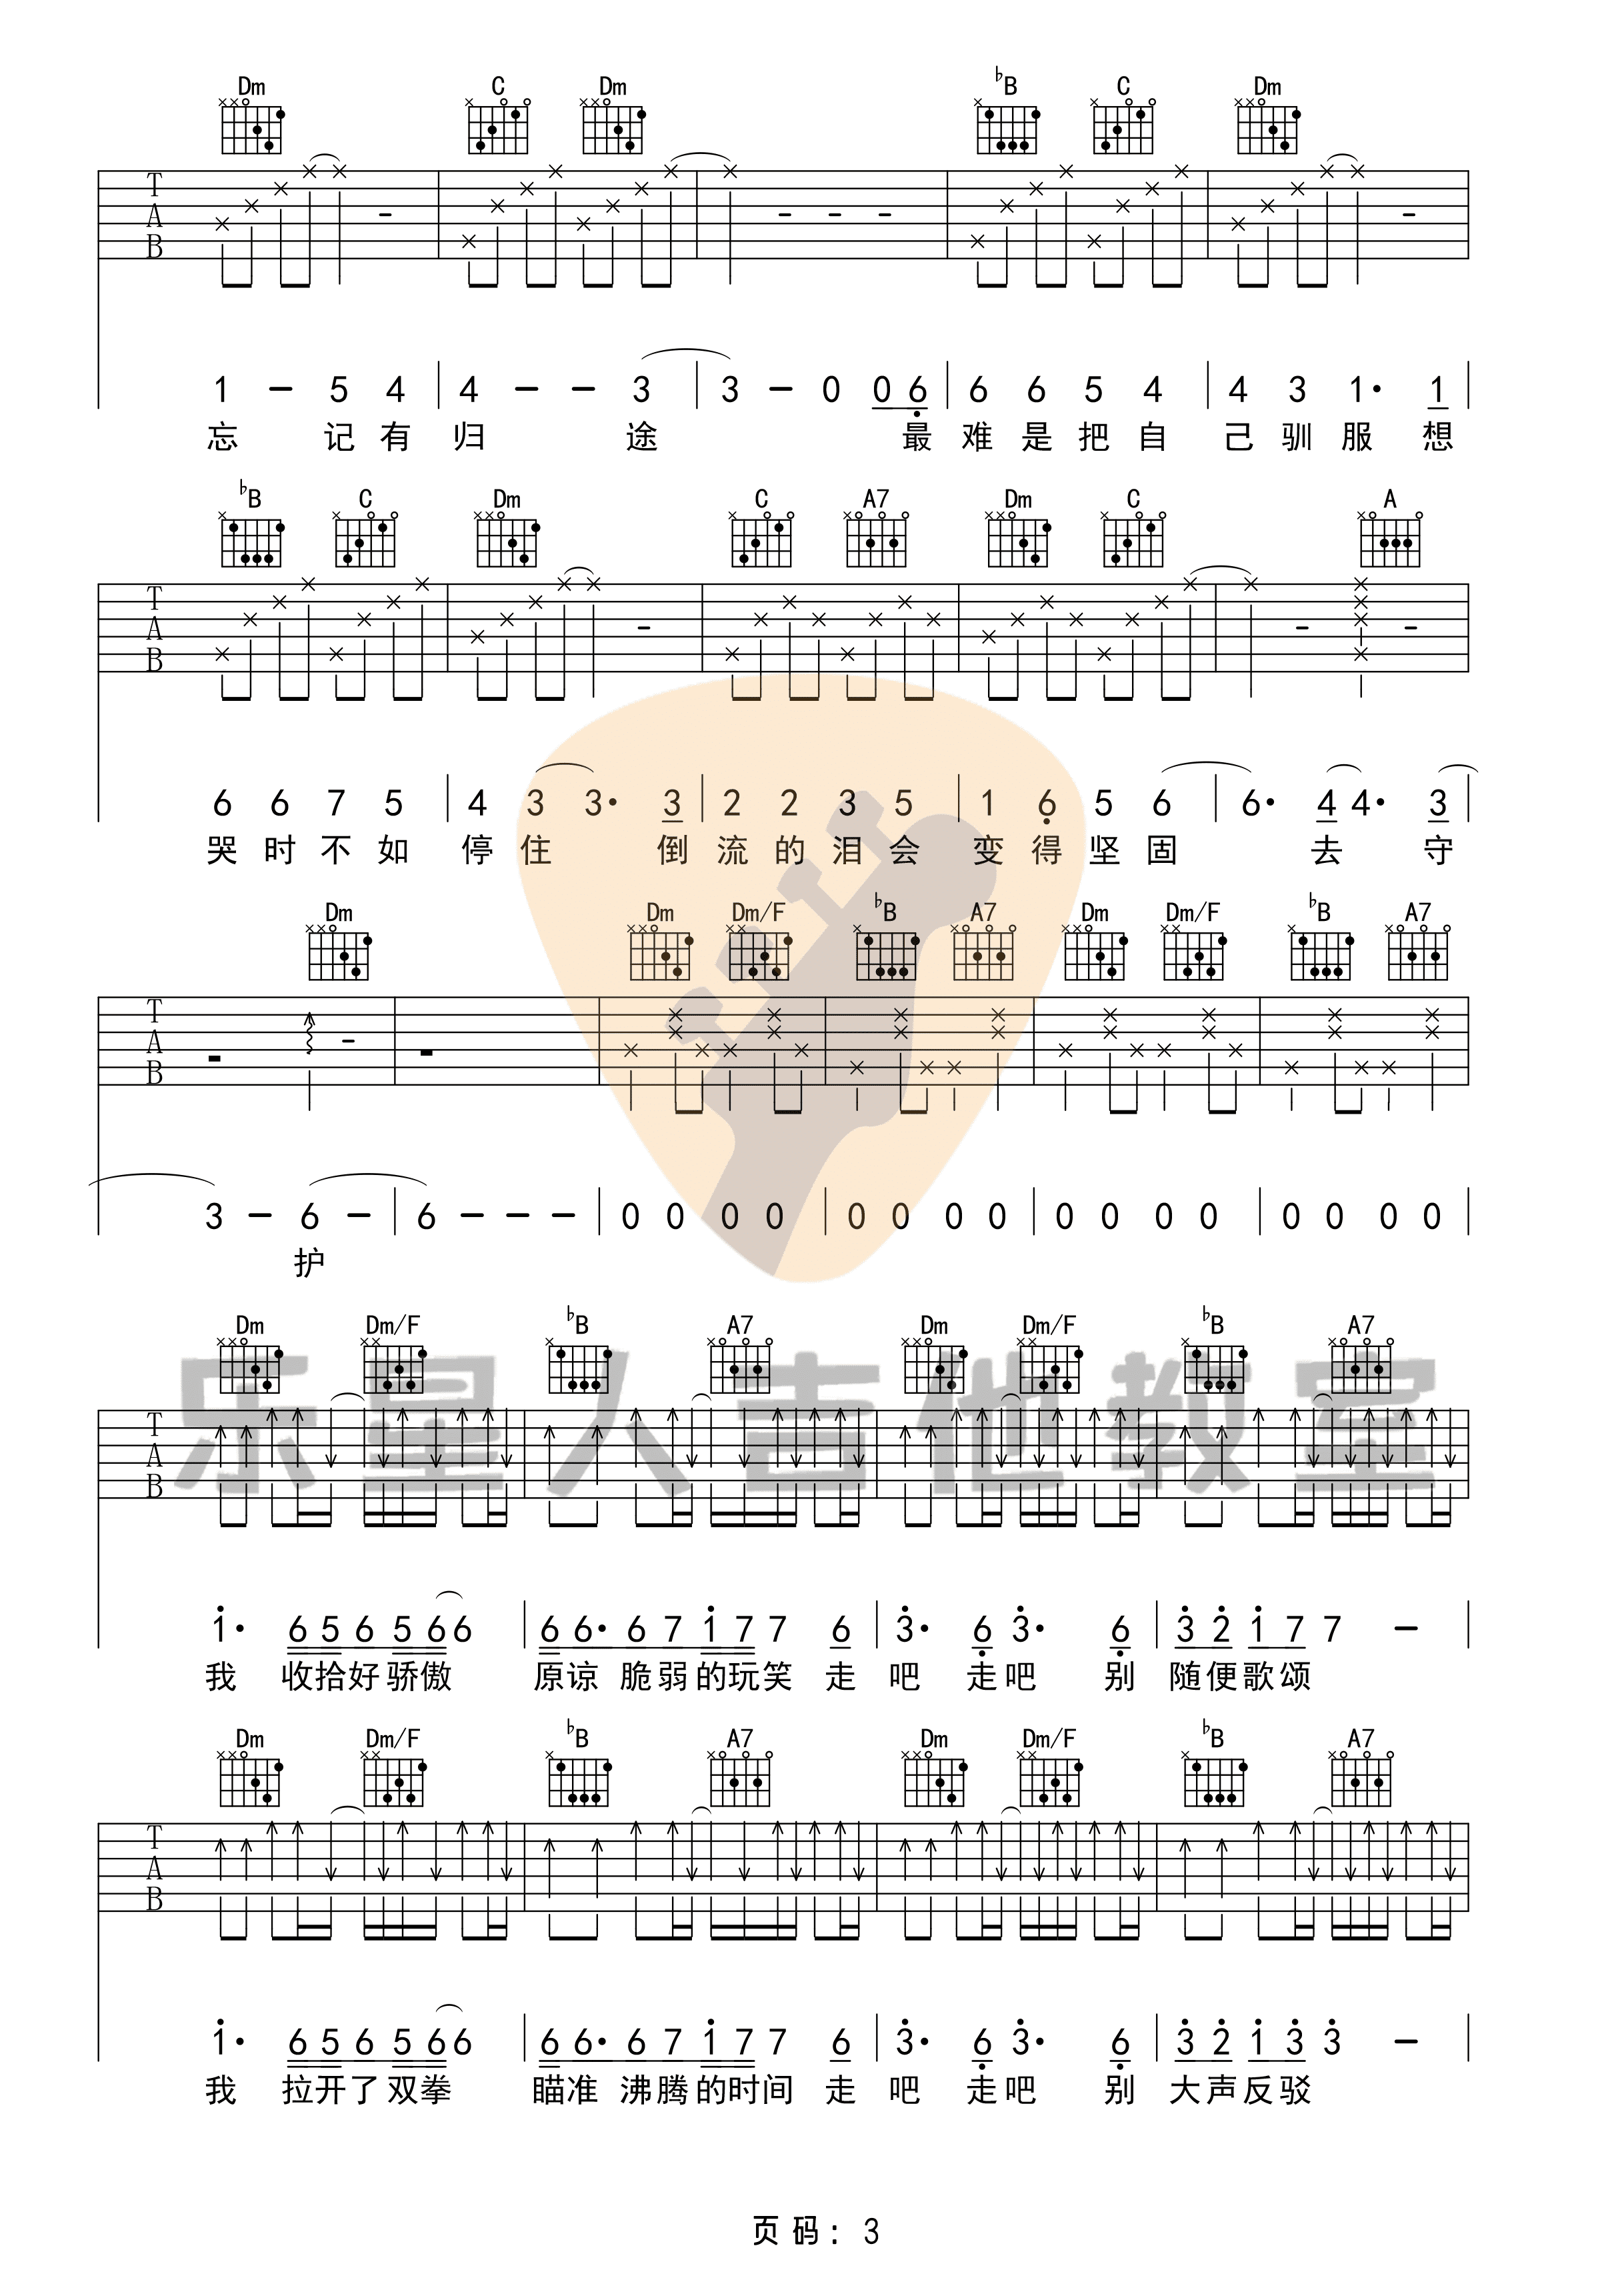 华晨宇 - 与火星的孩子对话(无限延音编配) [无限延音编配 弹唱] 吉他谱